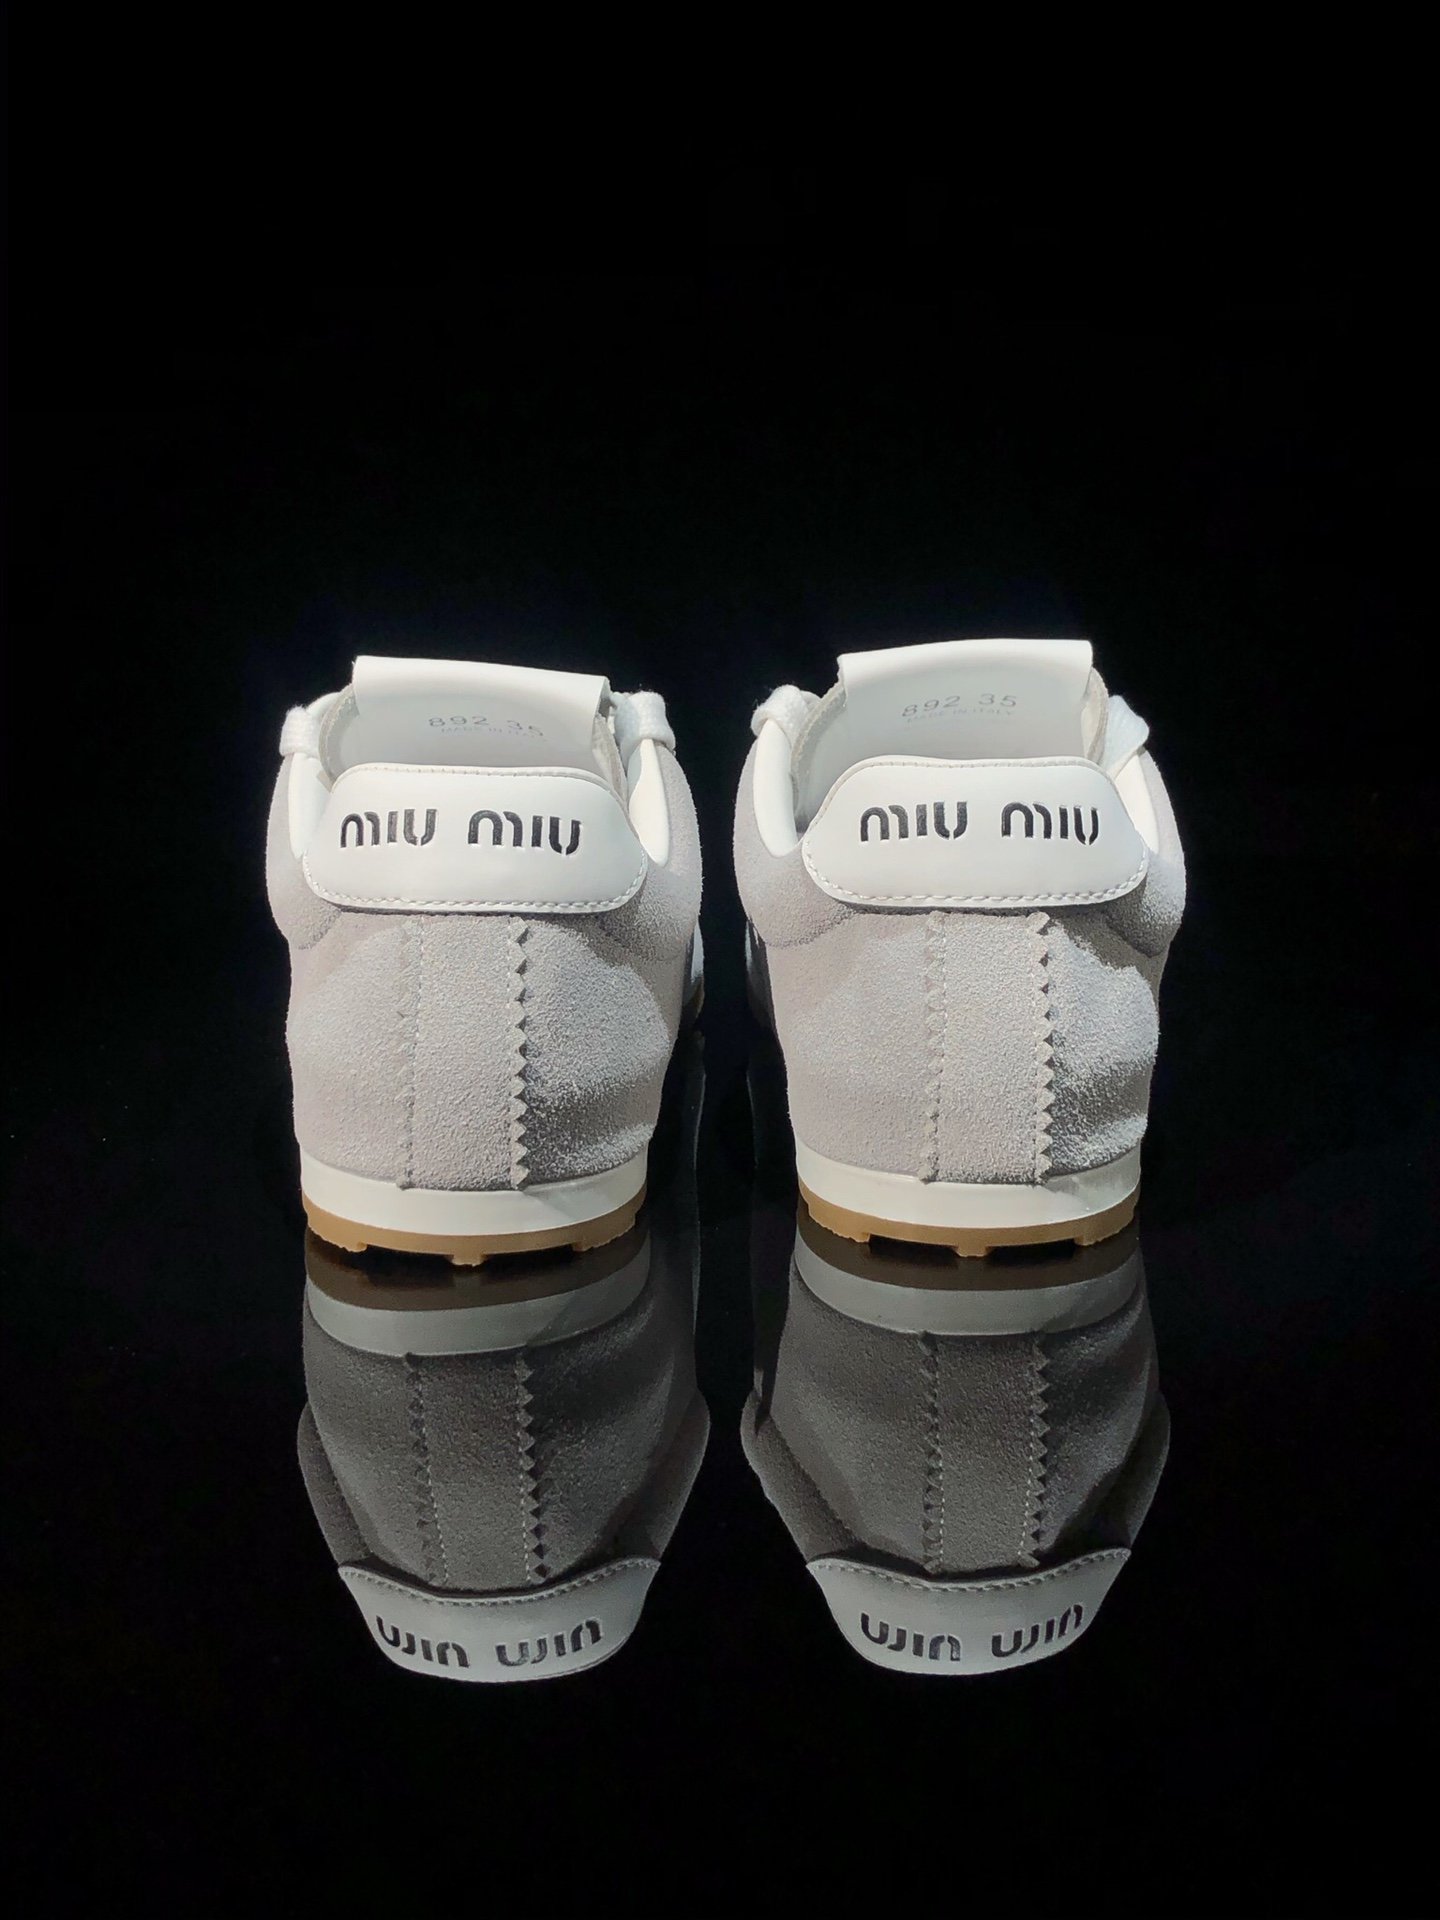 MiuMiu“青春跳脱”24早春款德训鞋MiuMiu新款运动鞋采用绒面革制成精致考究的做工和材质与轻盈时